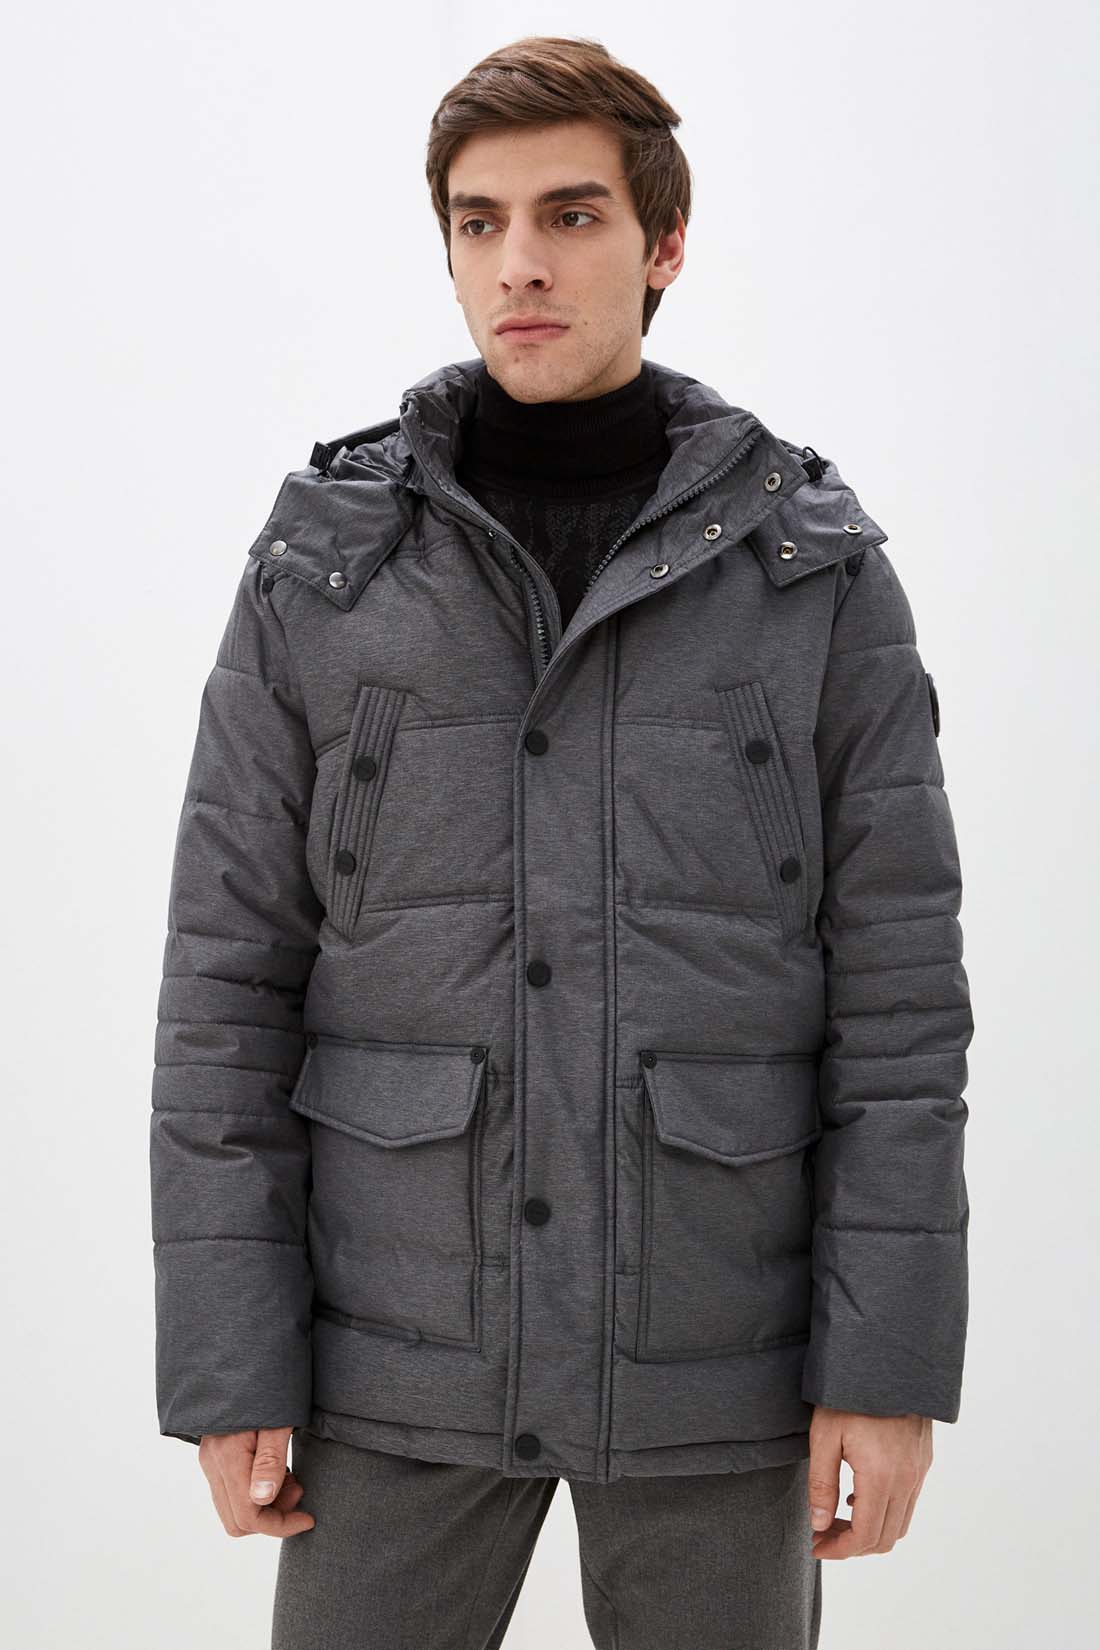 Куртка (Эко пух) (арт. baon B541507), размер S, цвет marengo melange#ebeeed